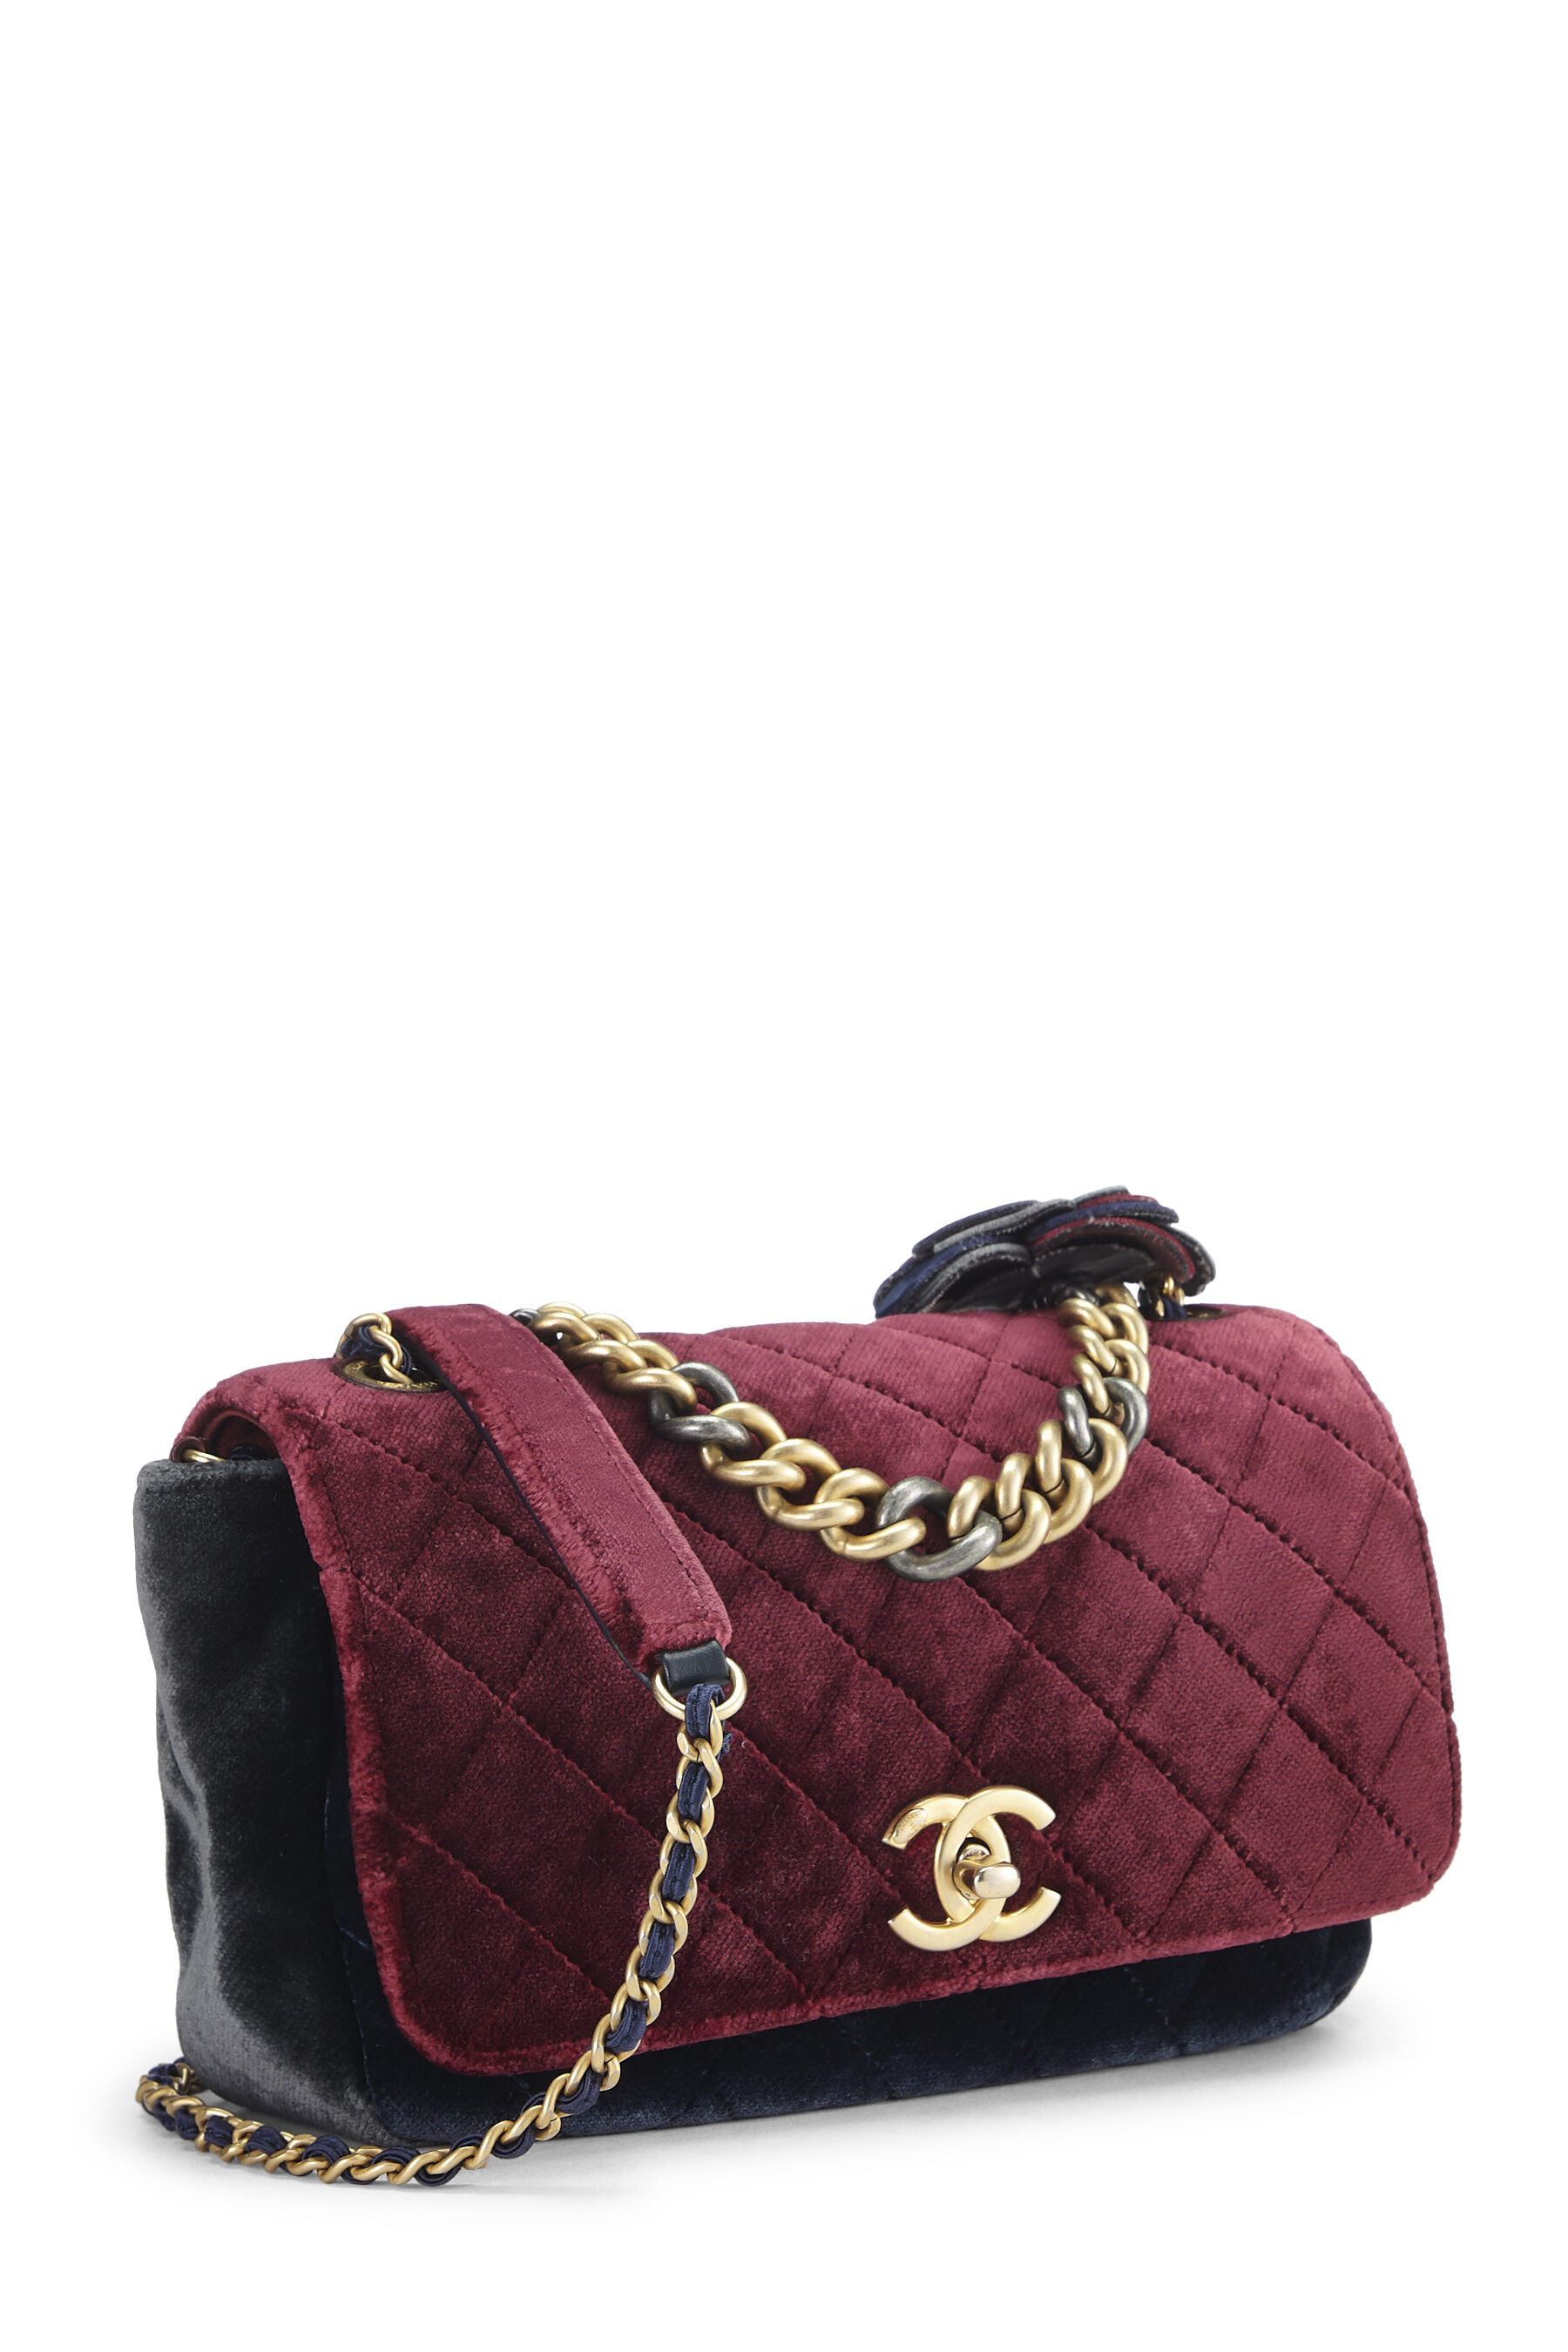 Chanel - Paris-Cosmopolite Tricolor Velour Private Affair Camellia Flap Bag Medium